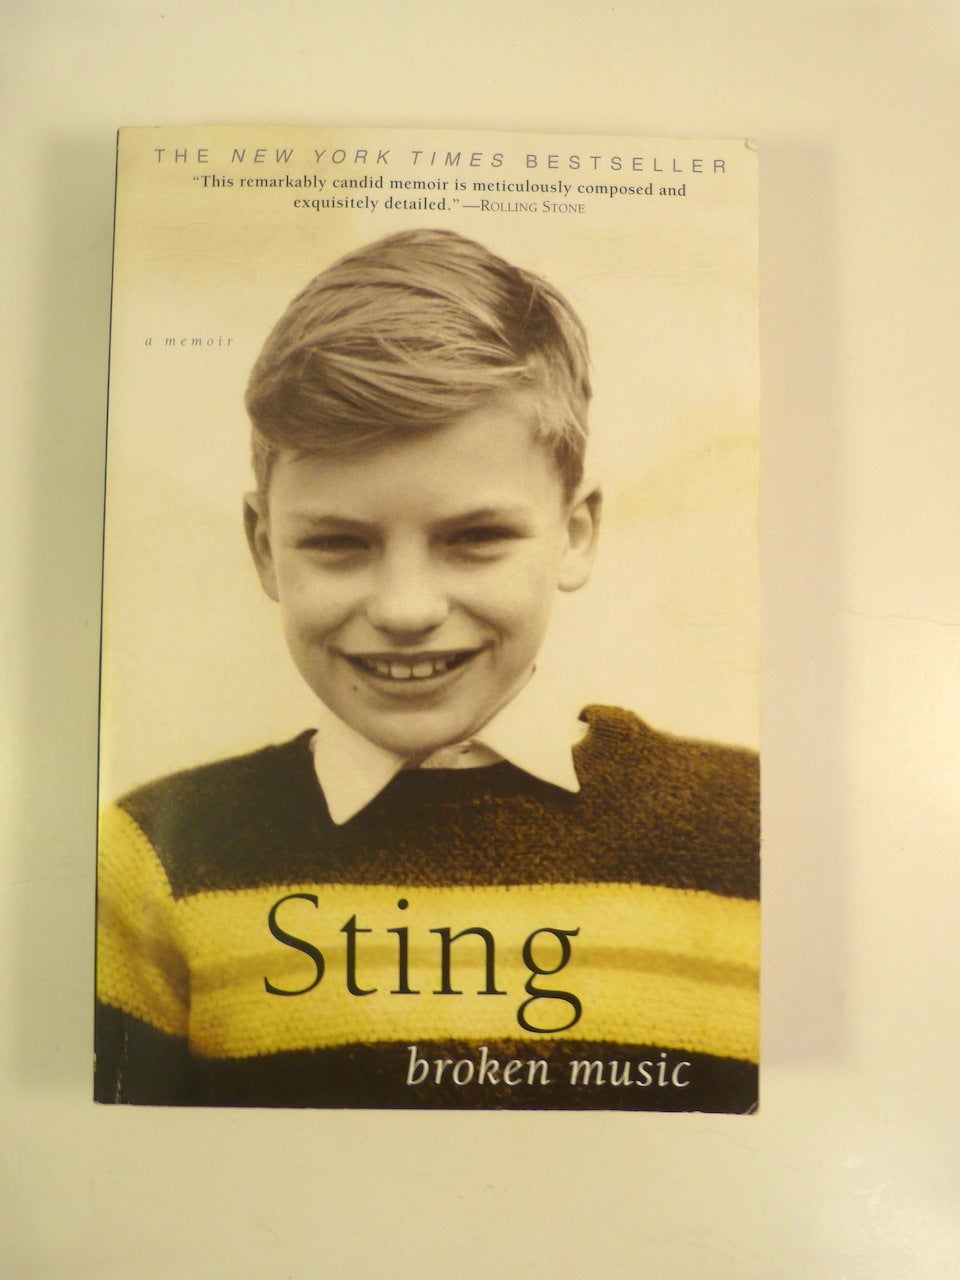 Sting (Sumner, Gordon Matthew Thomas) - Broken Music : A Memoir (Signed)